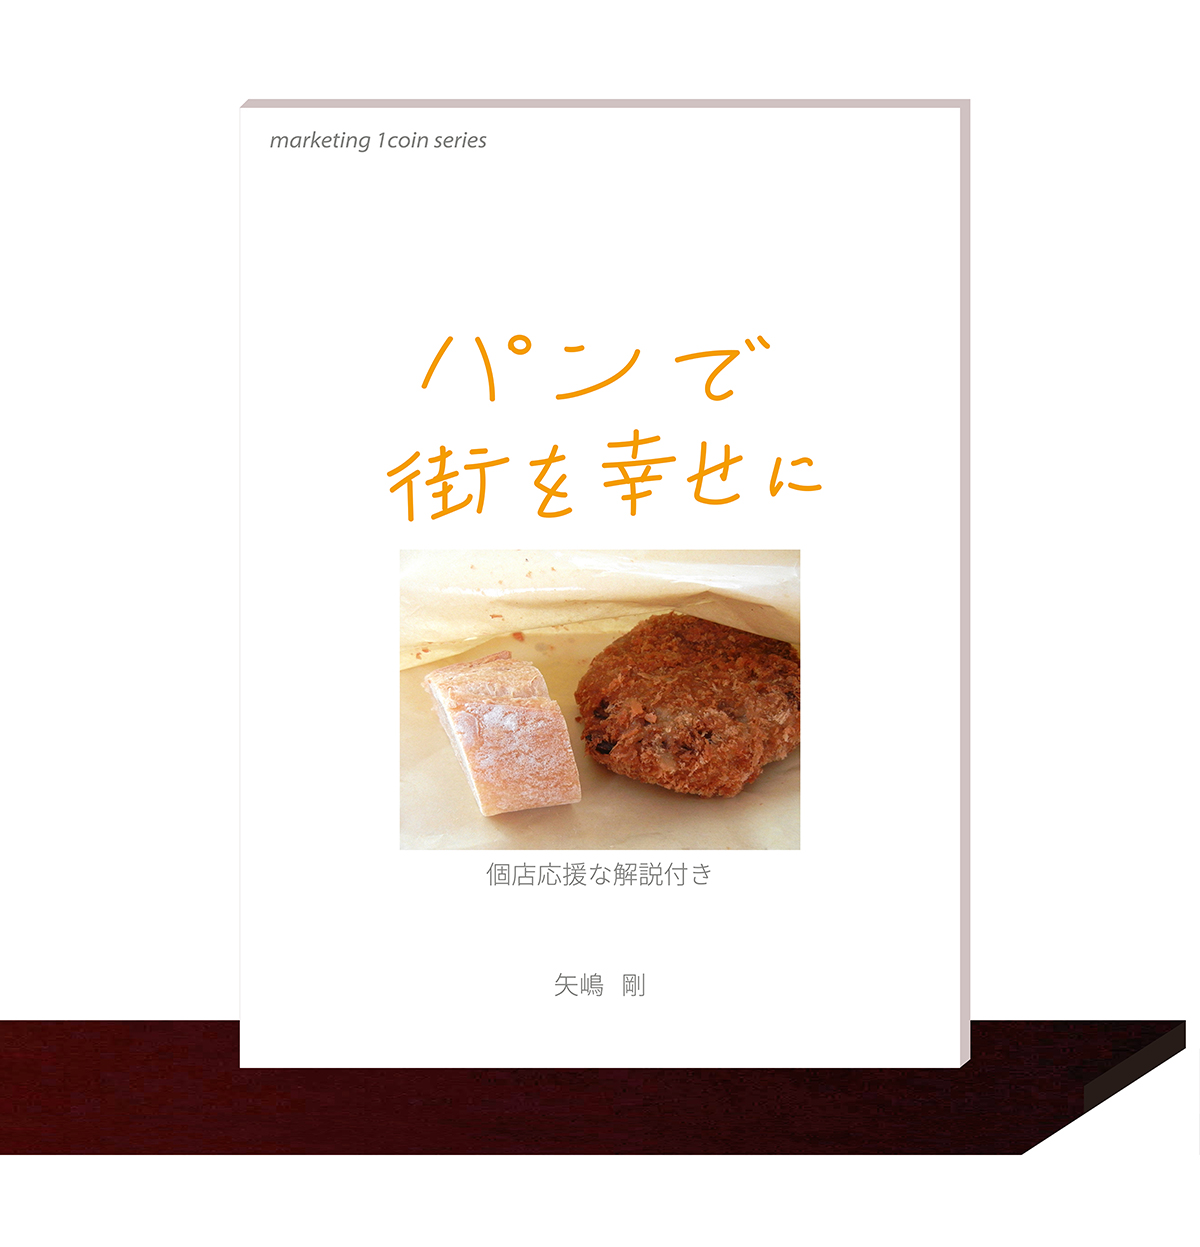 矢嶋剛・著。マーケティング・１コイン・シリーズ(3)『パンで街を幸せに』（矢嶋ストーリー刊）が本棚の棚板の上に並んでいます。矢嶋ストーリー公式サイトのコツ本ページに掲載されている画像です。